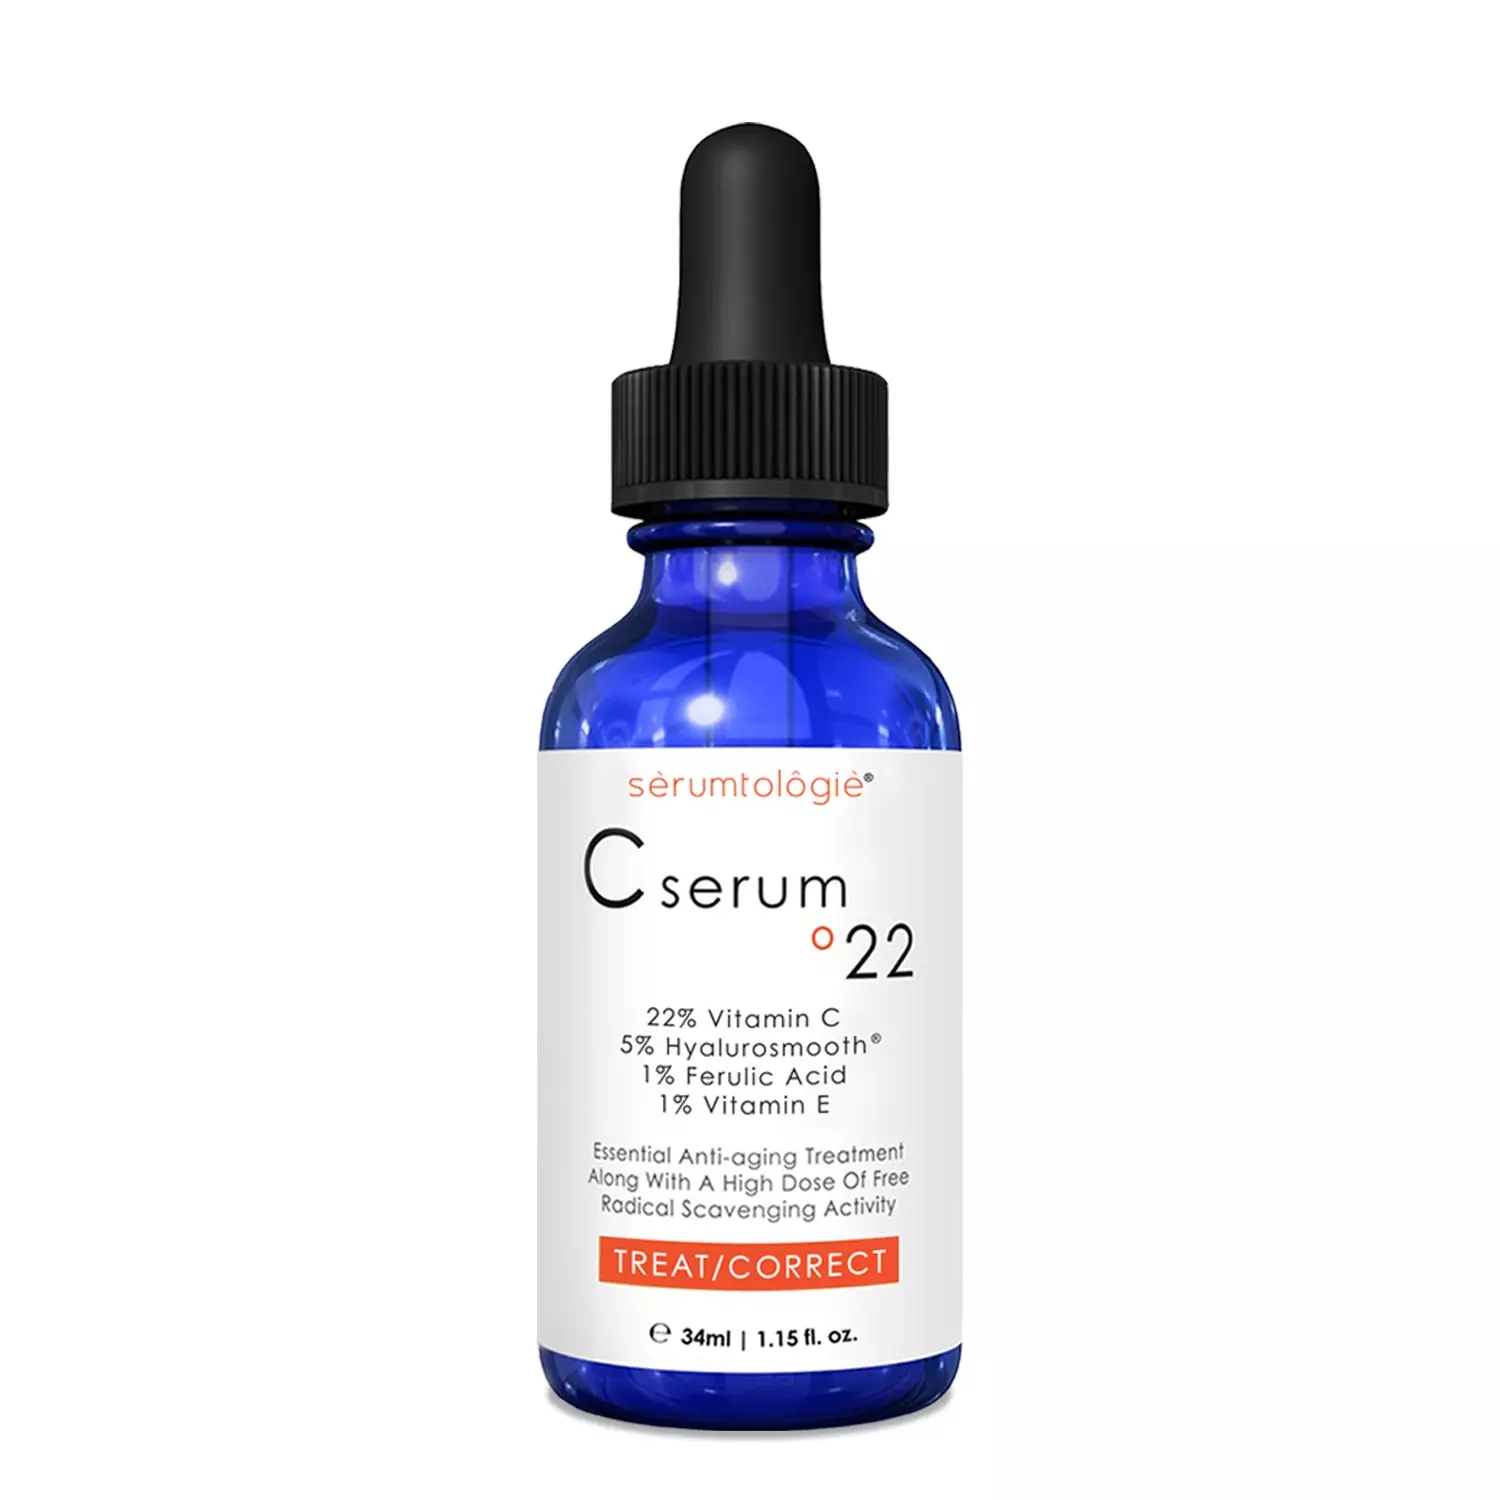 serumtologie C Serum Pure Vitamin C Serum for Face with Hyaluronic Acid & Ferulic Acid